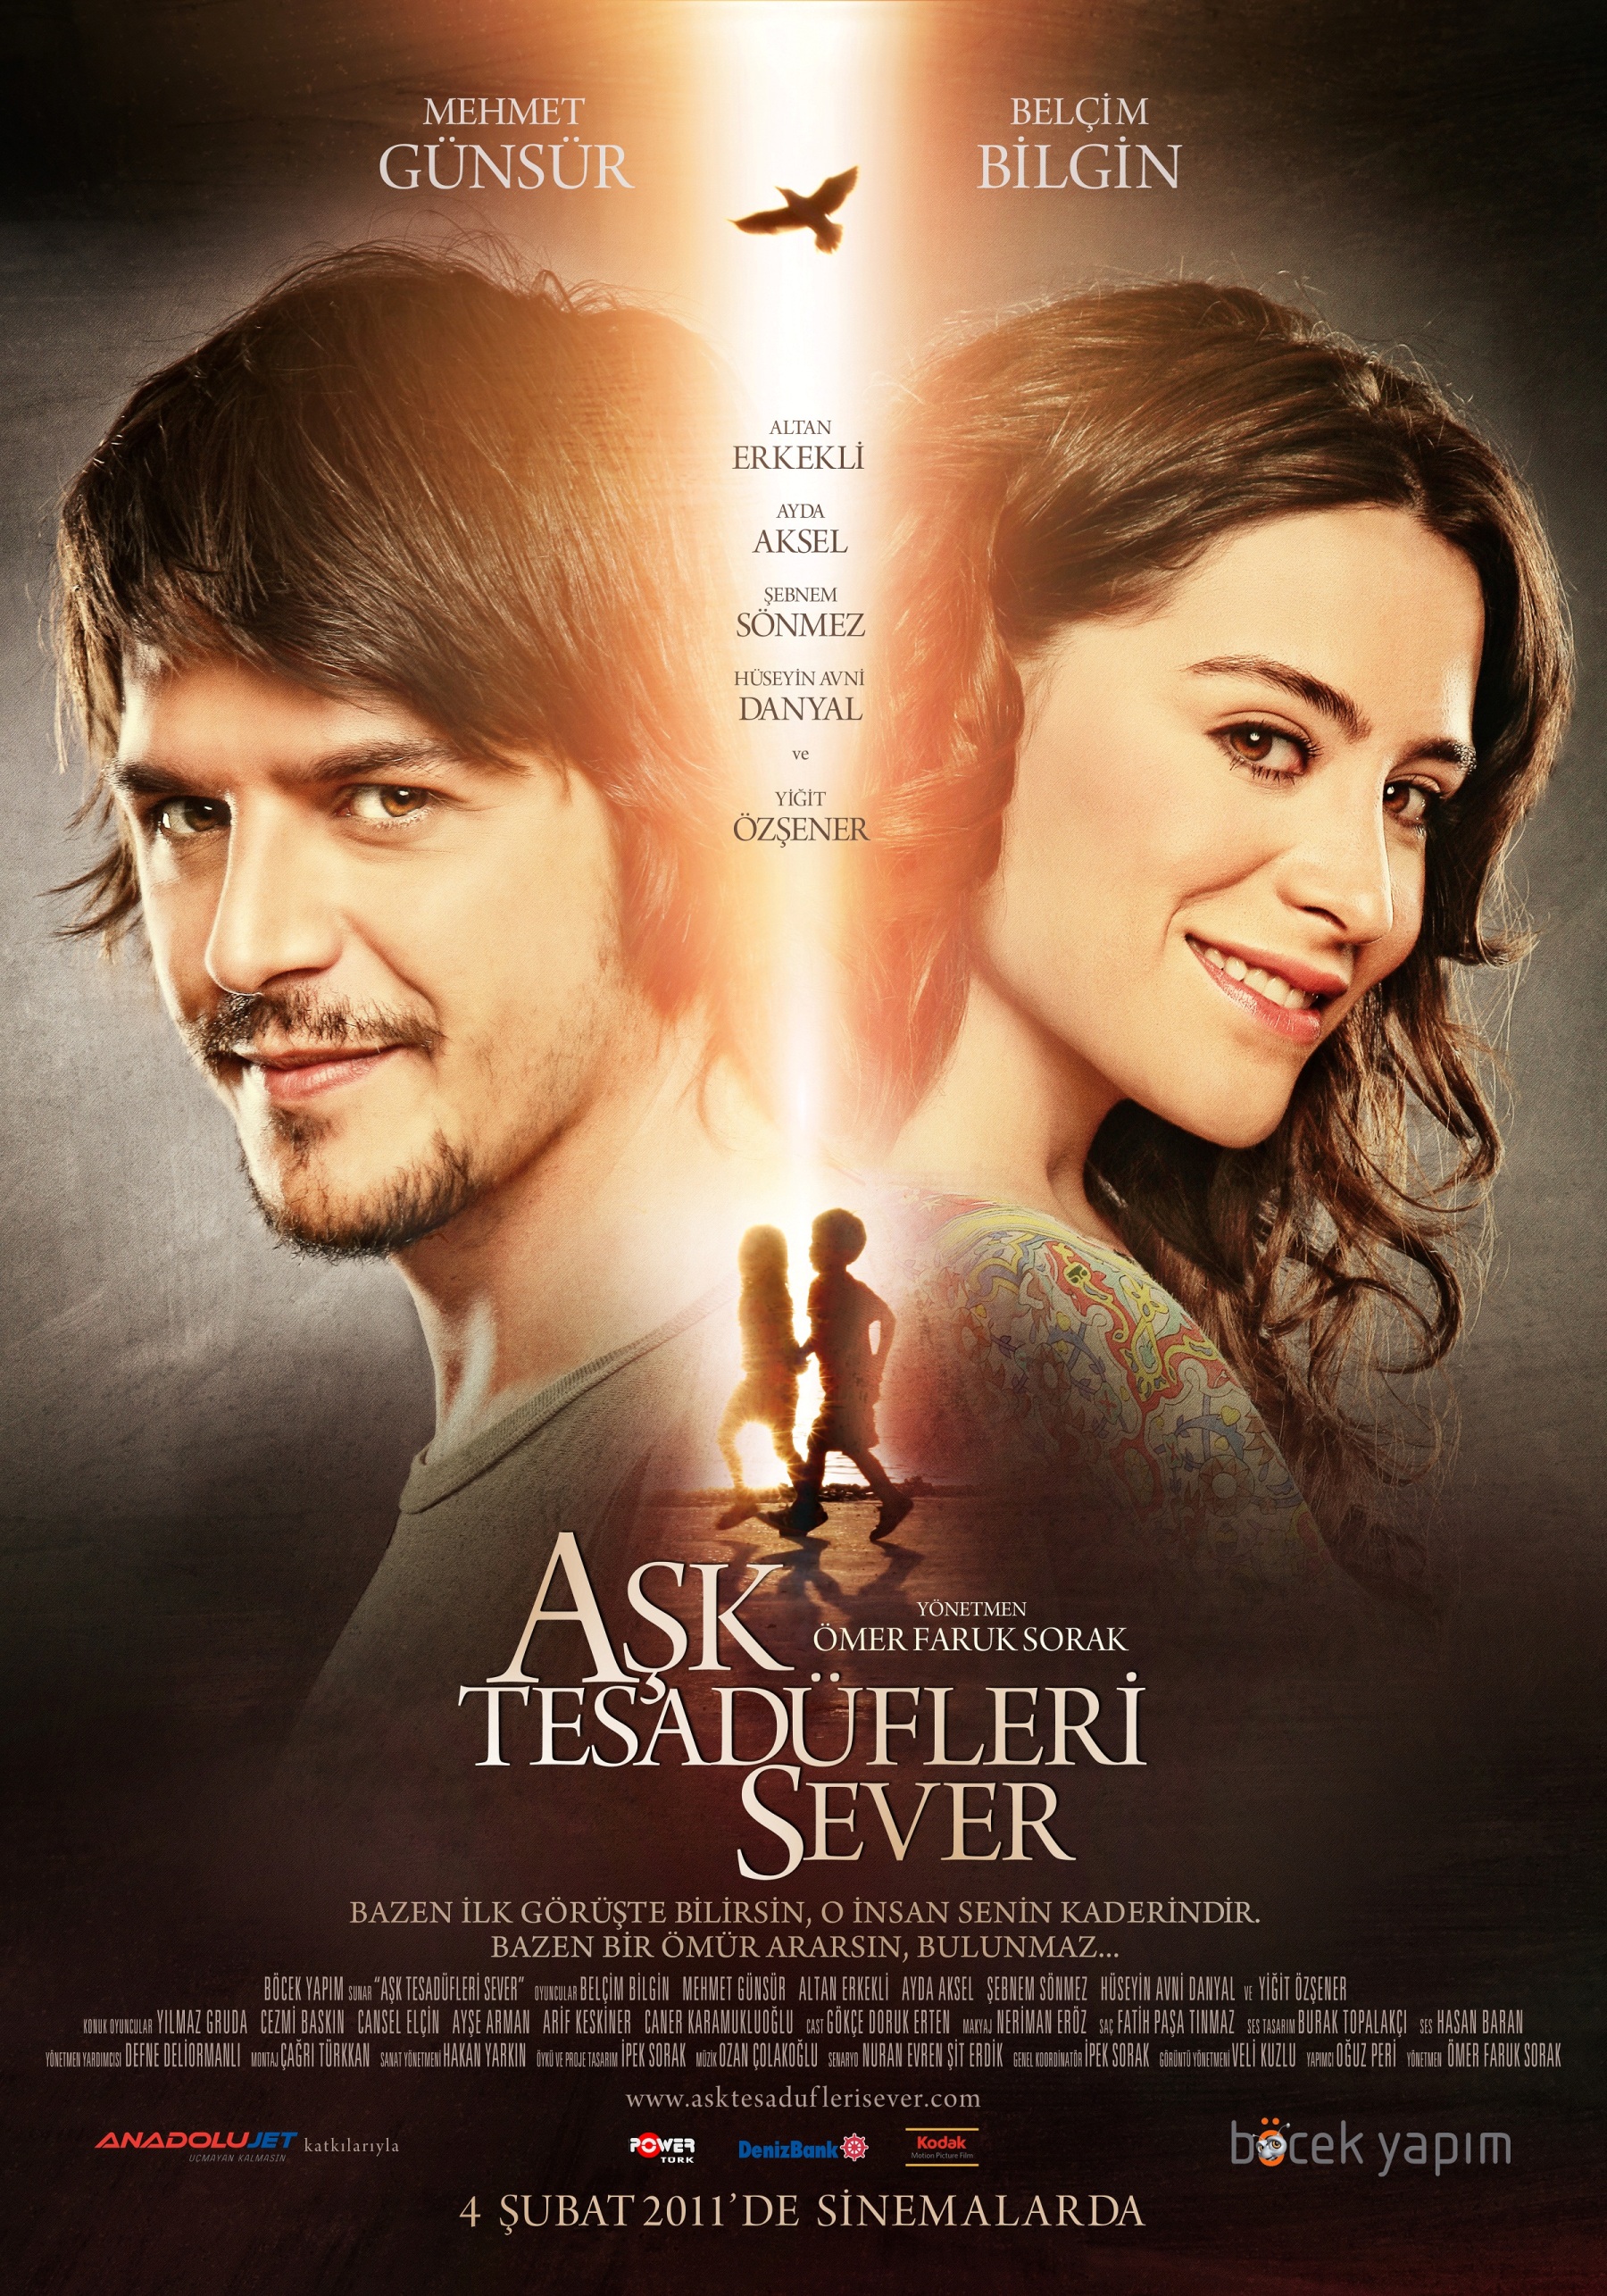 فيلم الحب يعشق الصدف Ask Tesadüfleri Sever